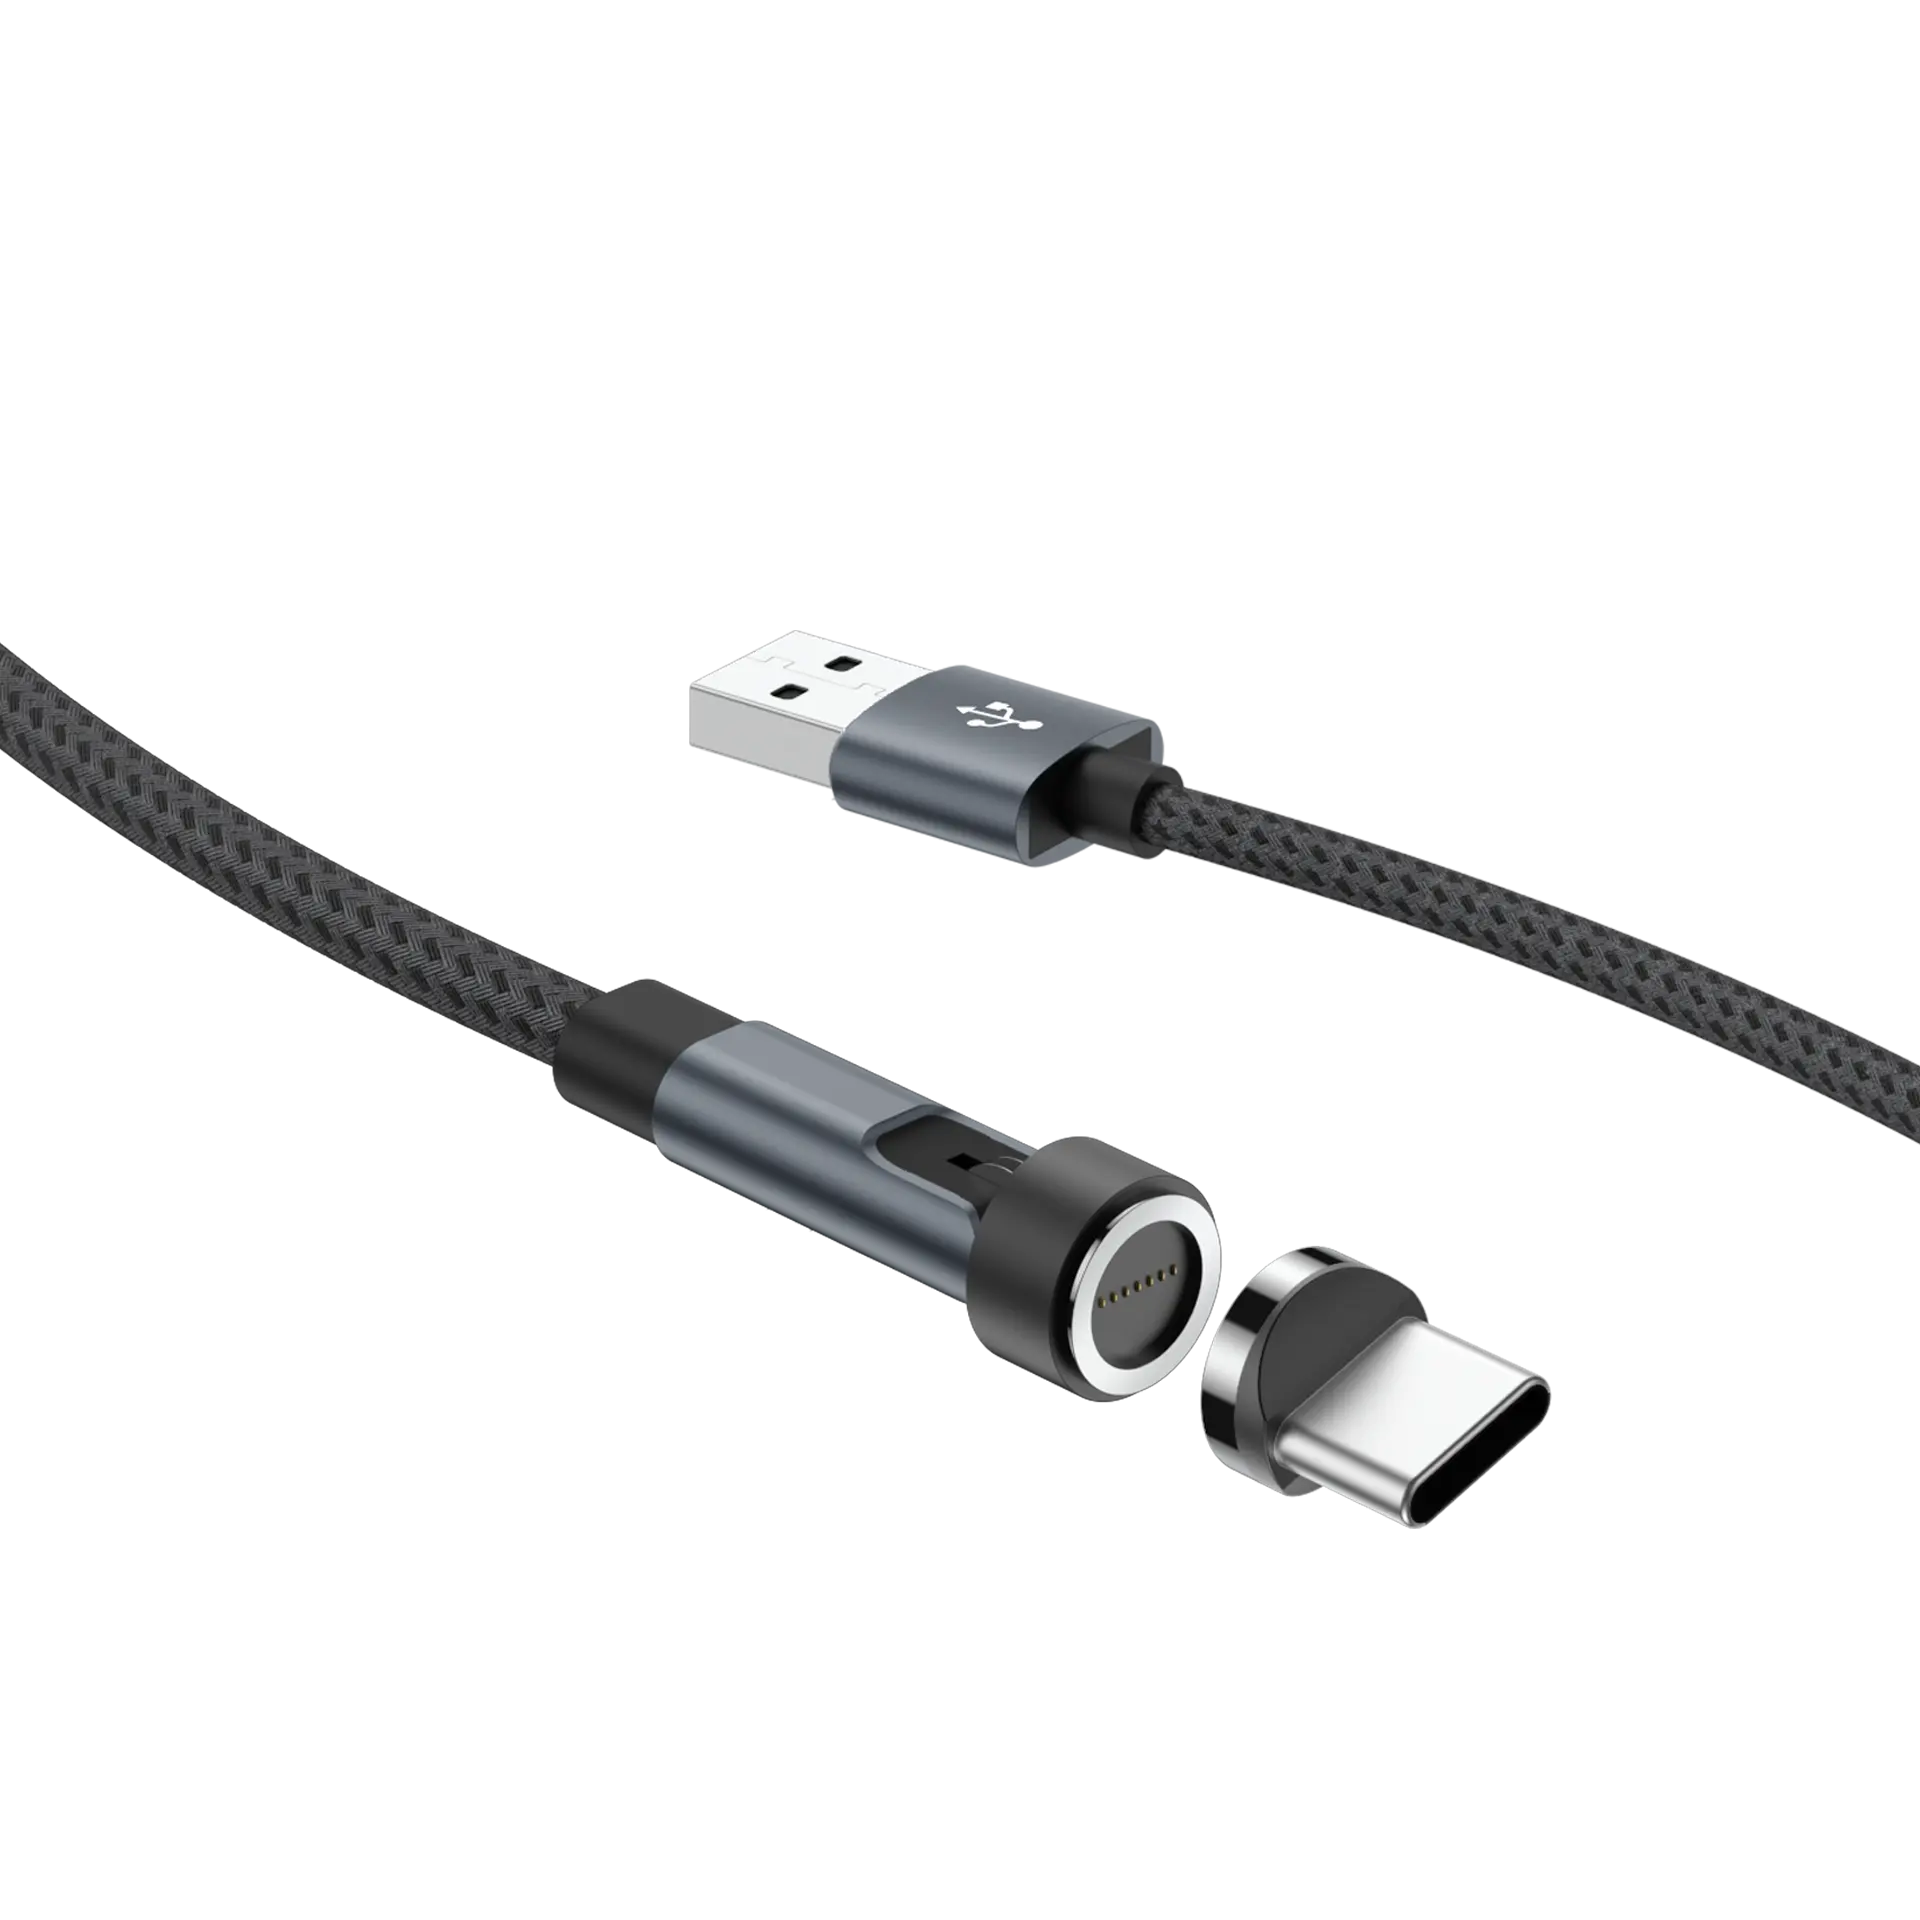 Fabricant C chargeur magnétique de données de téléphone portable à Charge rapide, câble de données USB 3 en 1 magnétique